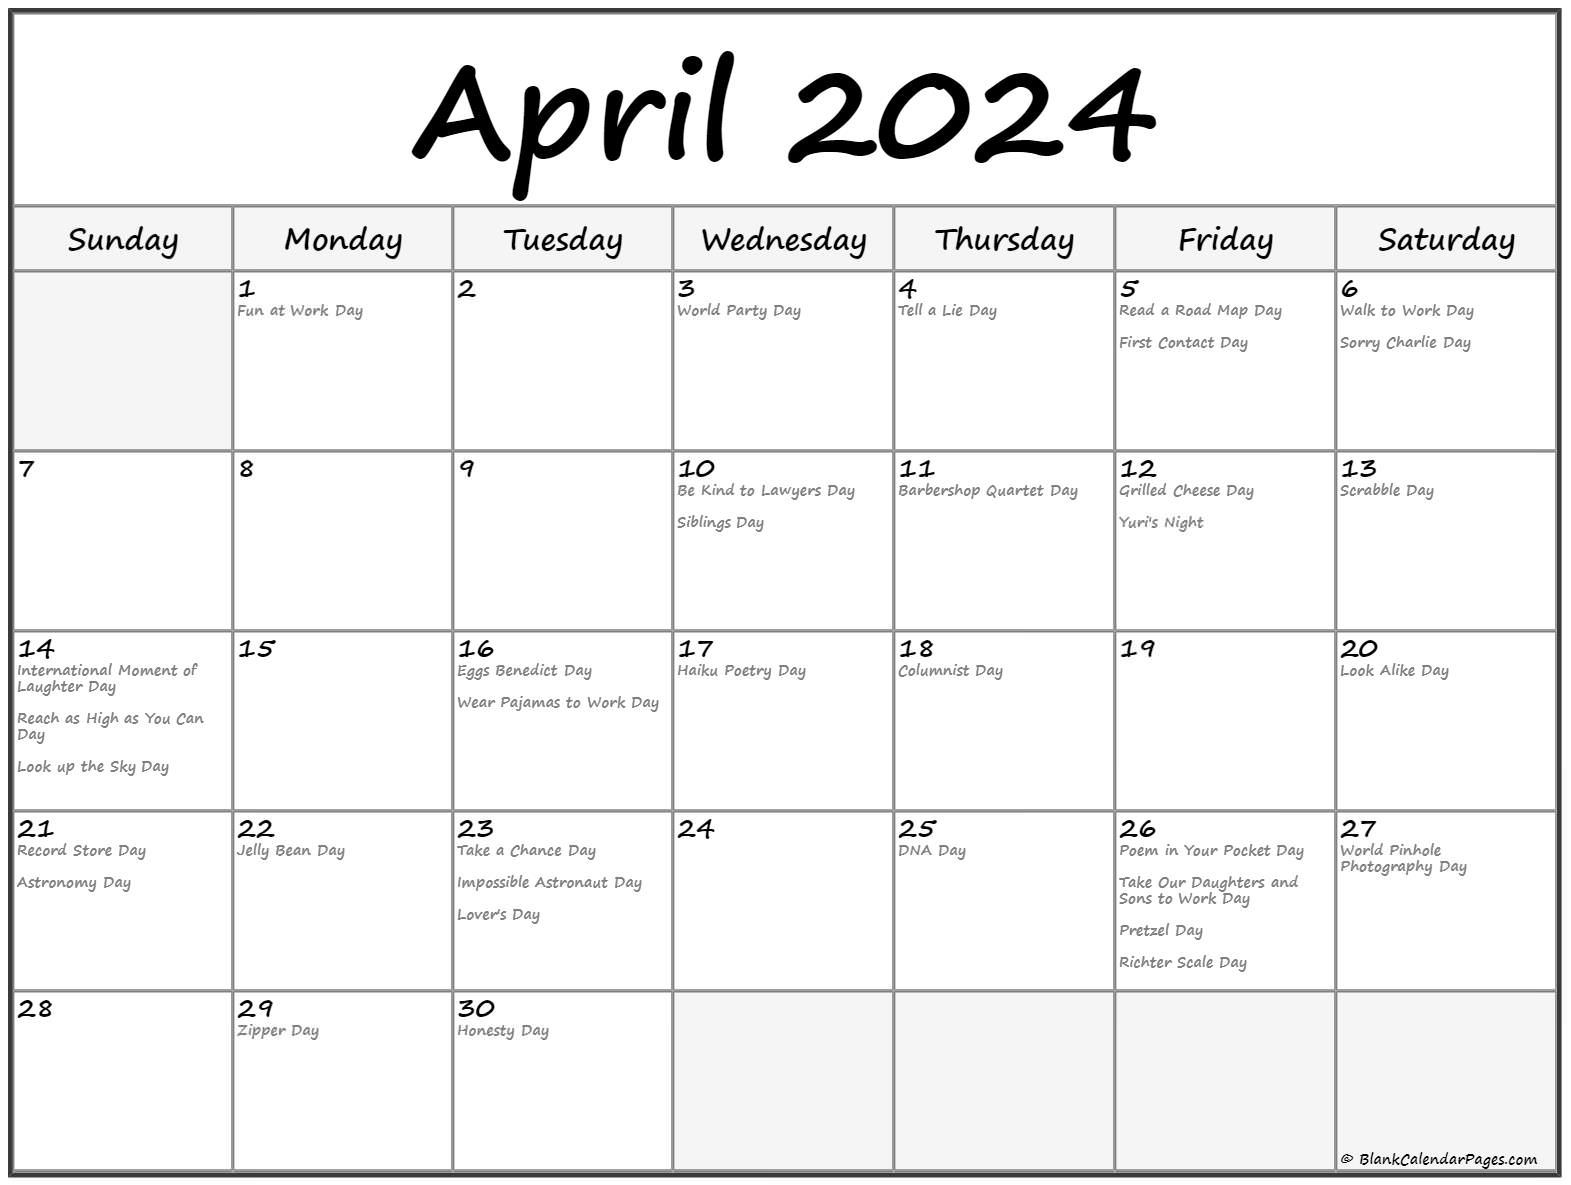 National Day Calendar April 2022 April 2022 With Holidays Calendar